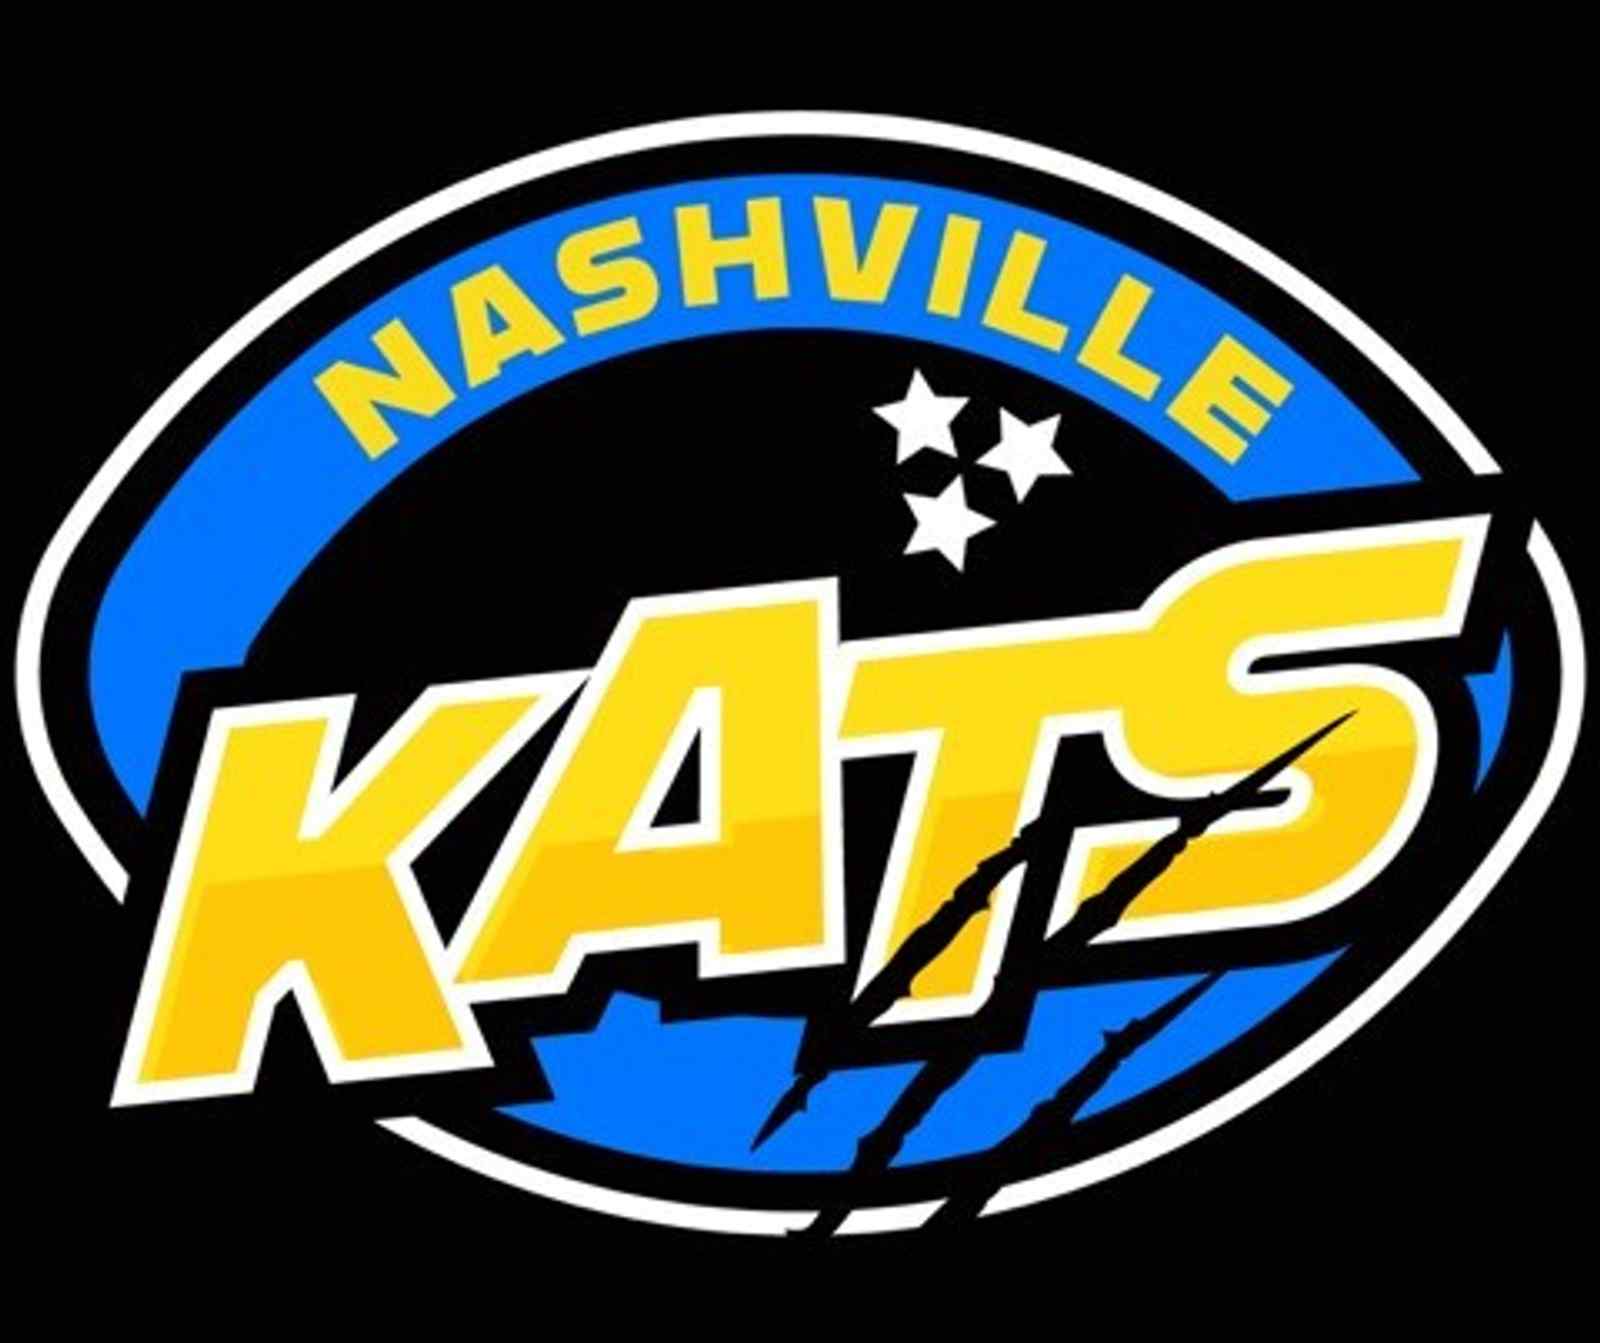 Nashville Kats Vs Albany Firebirds